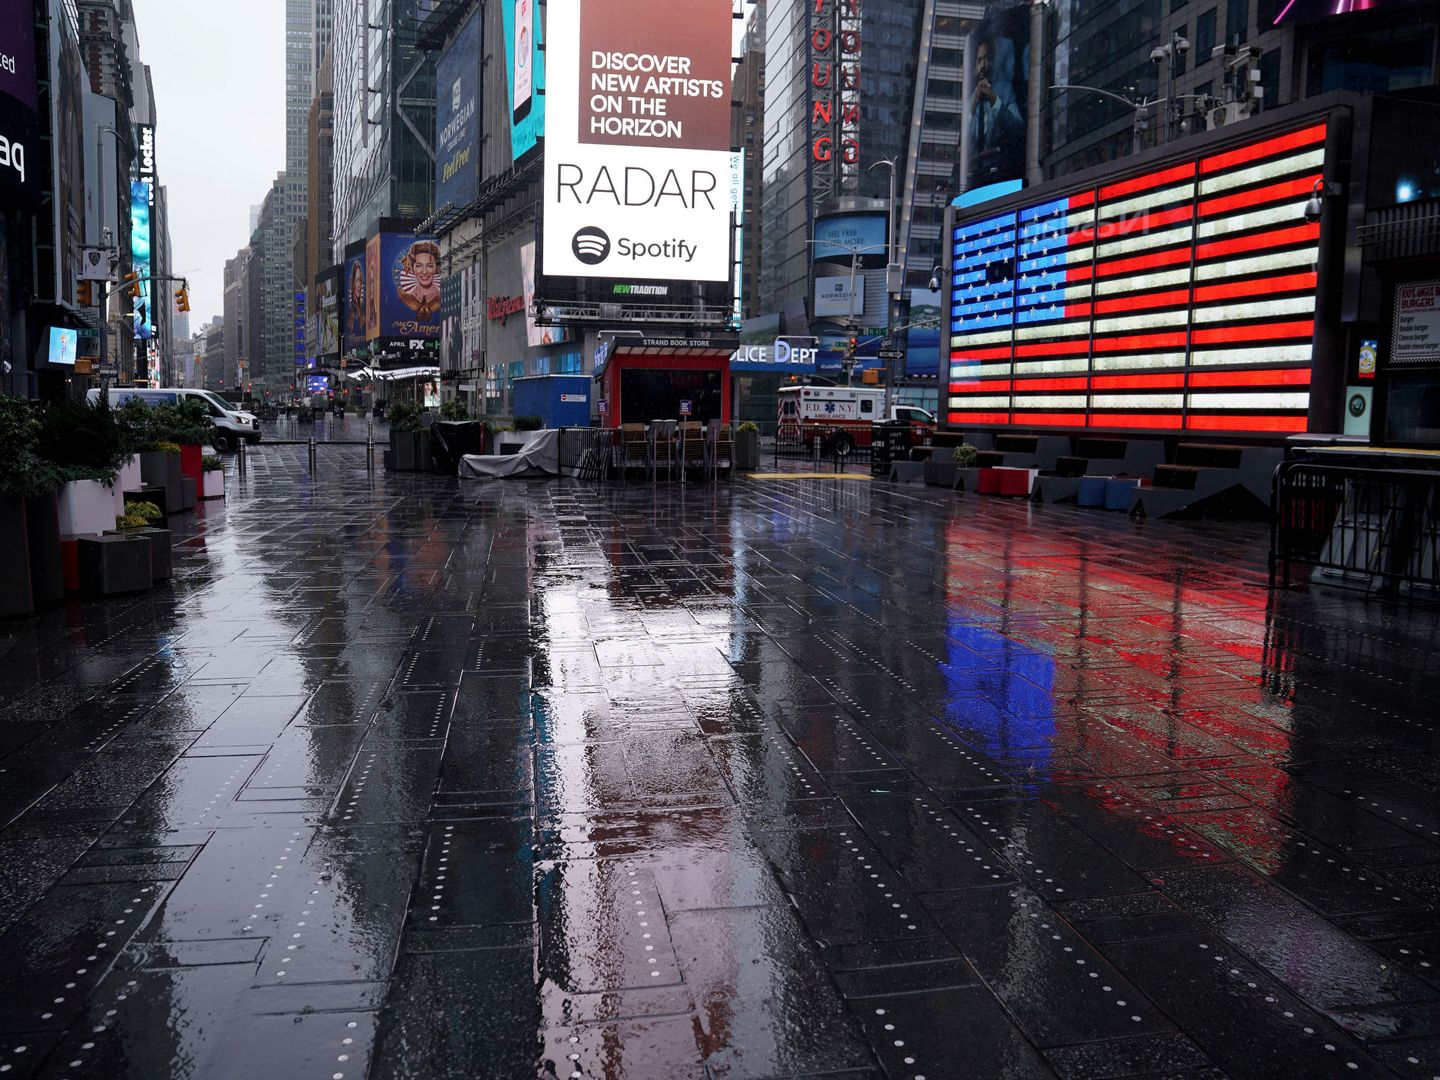 Times Square, habitualmente inundada de turistas, vacía por el coronavirus. (Reuters)